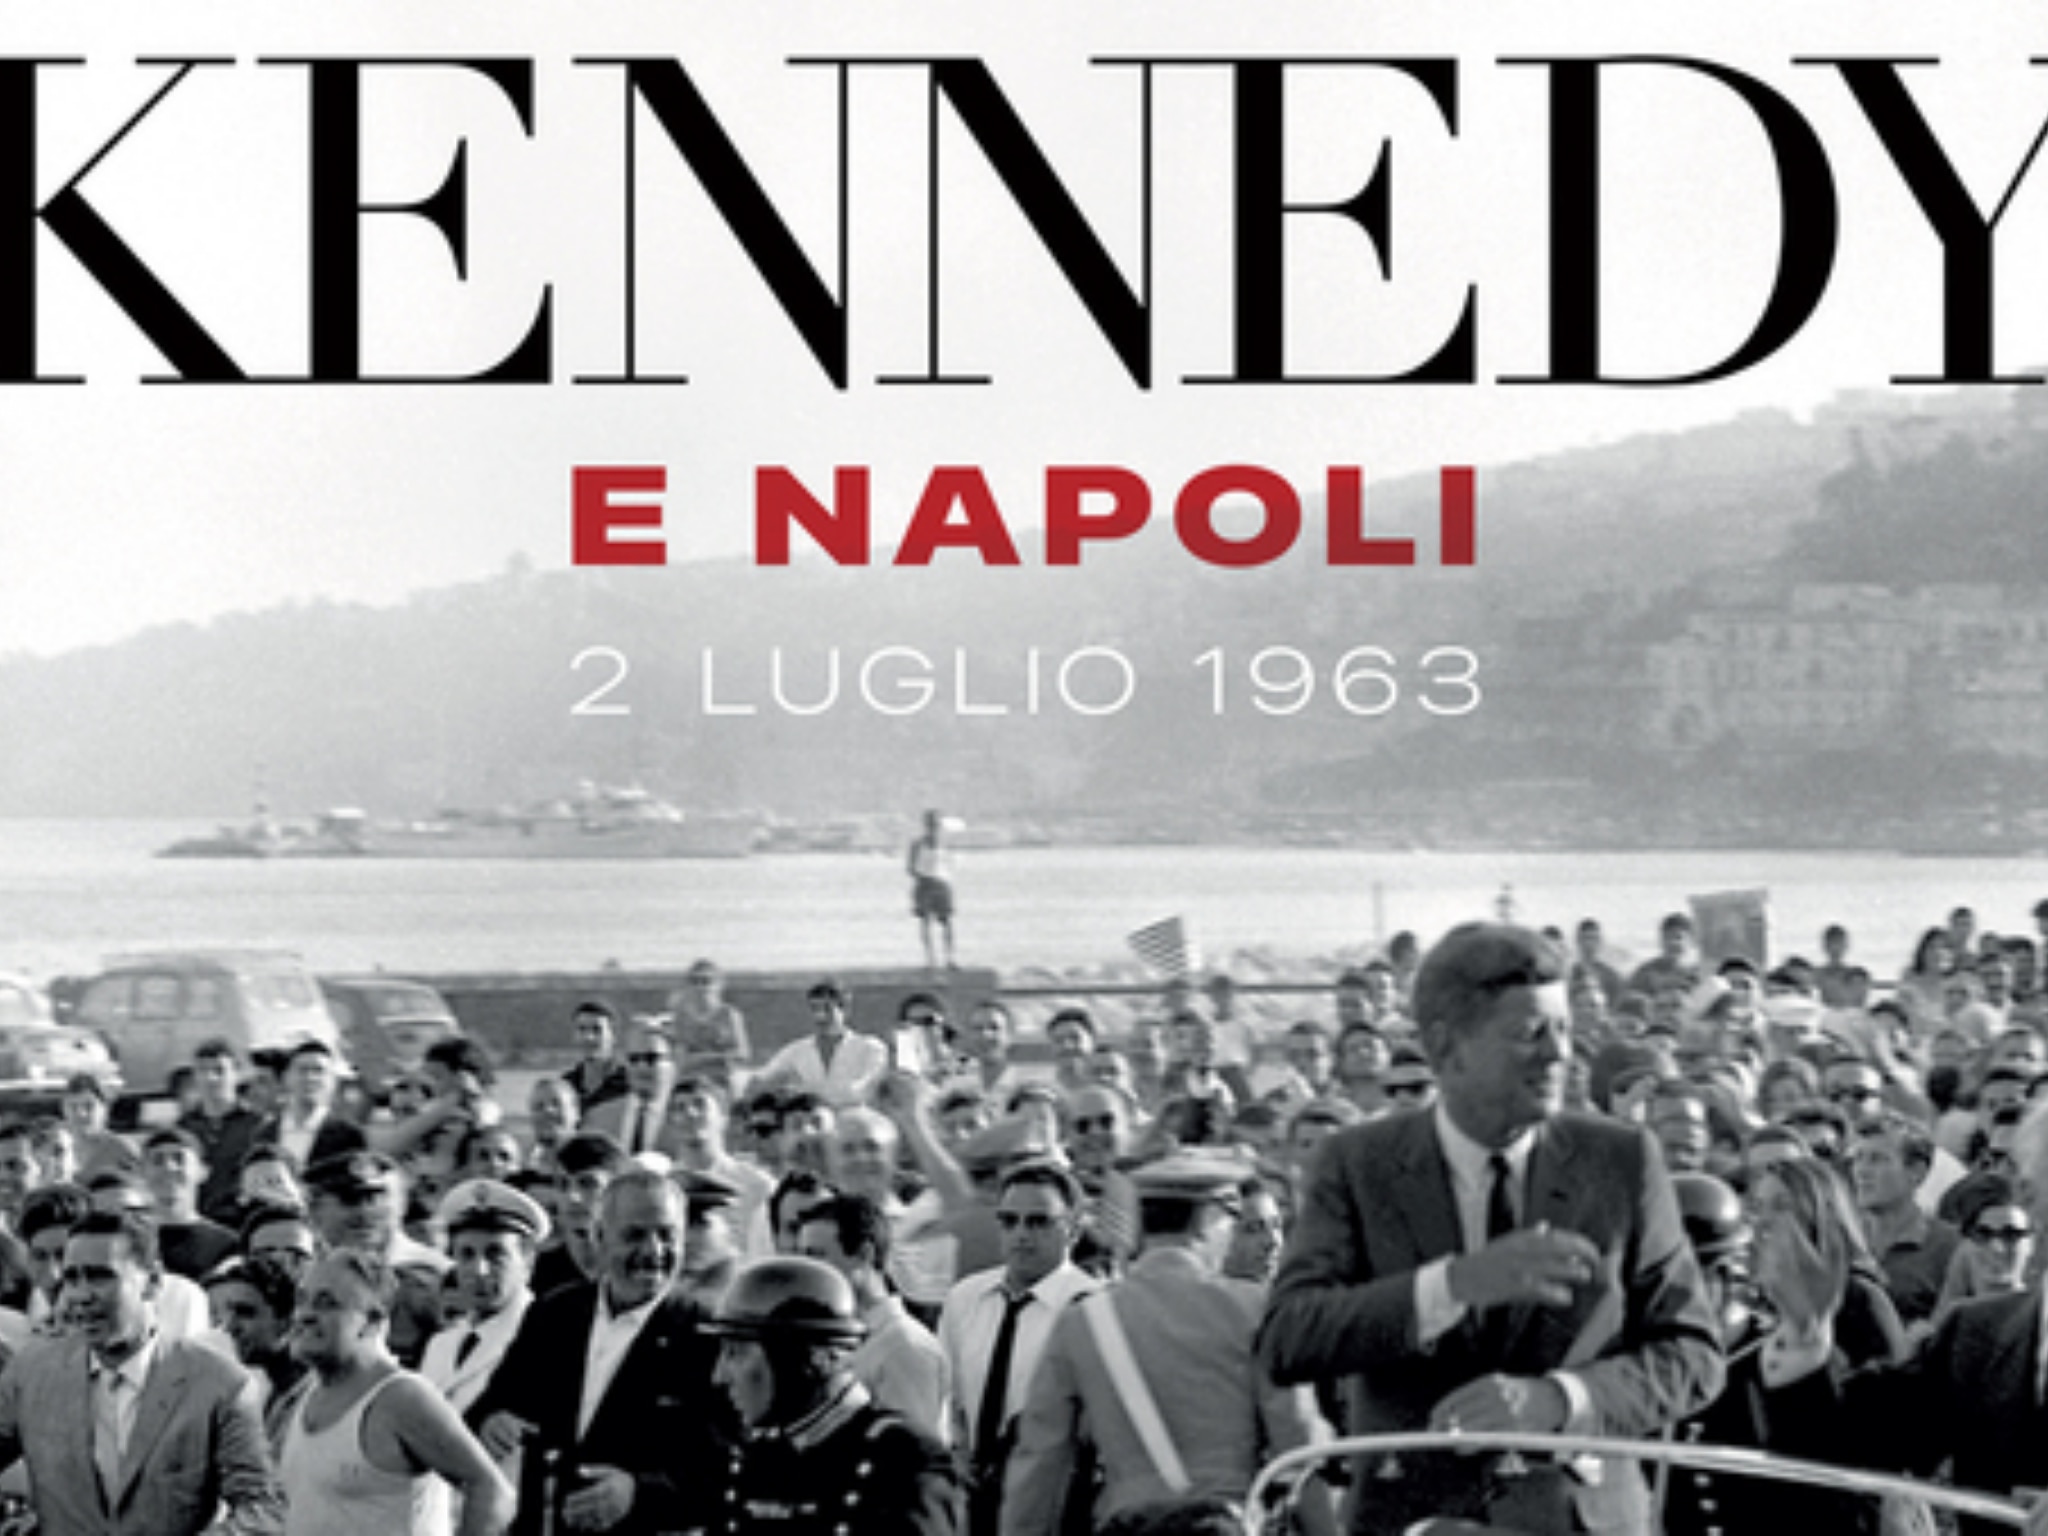 Kennedy e Napoli - 2 luglio 1963